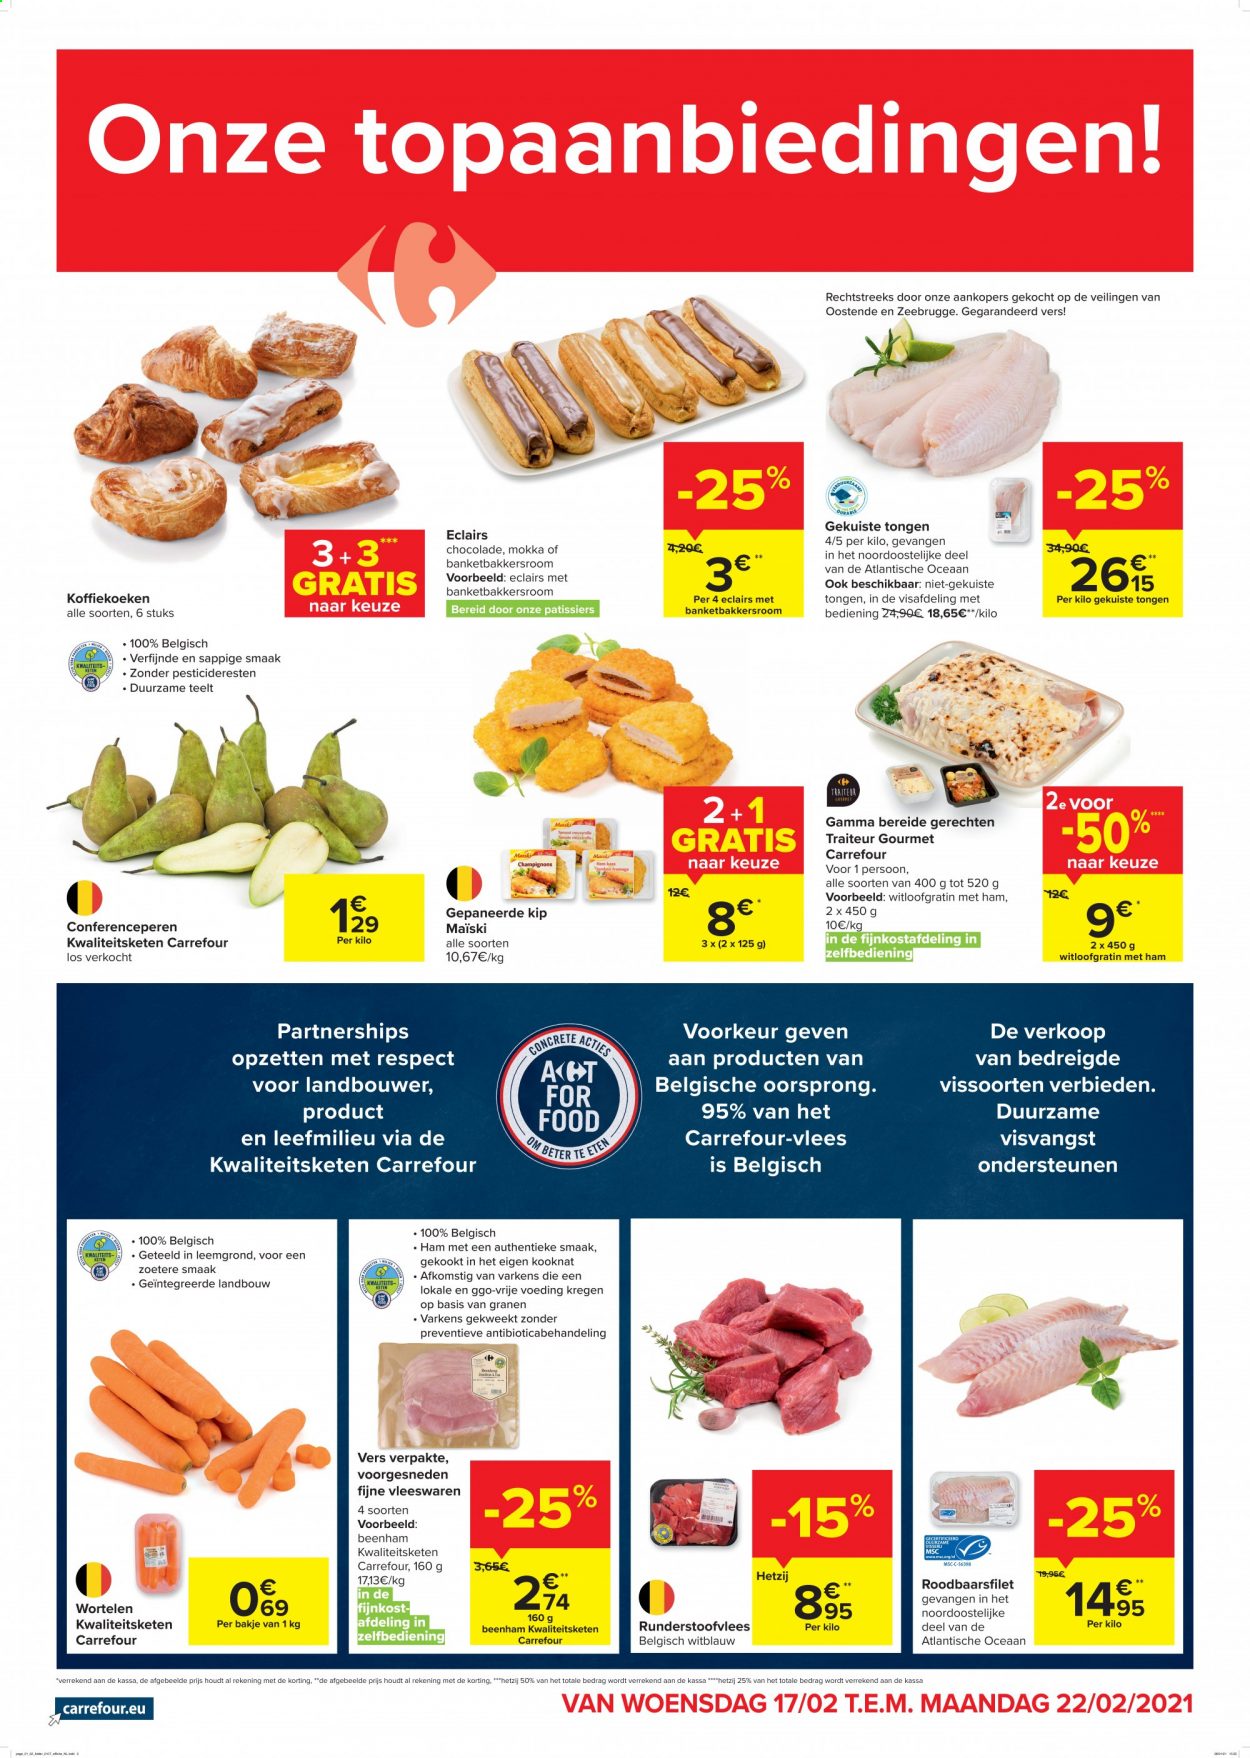 thumbnail - Carrefour market-aanbieding - 17/02/2021 - 22/02/2021 -  producten in de aanbieding - beenham, éclairs, ham, chocolade, gepaneerde kip. Pagina 1.